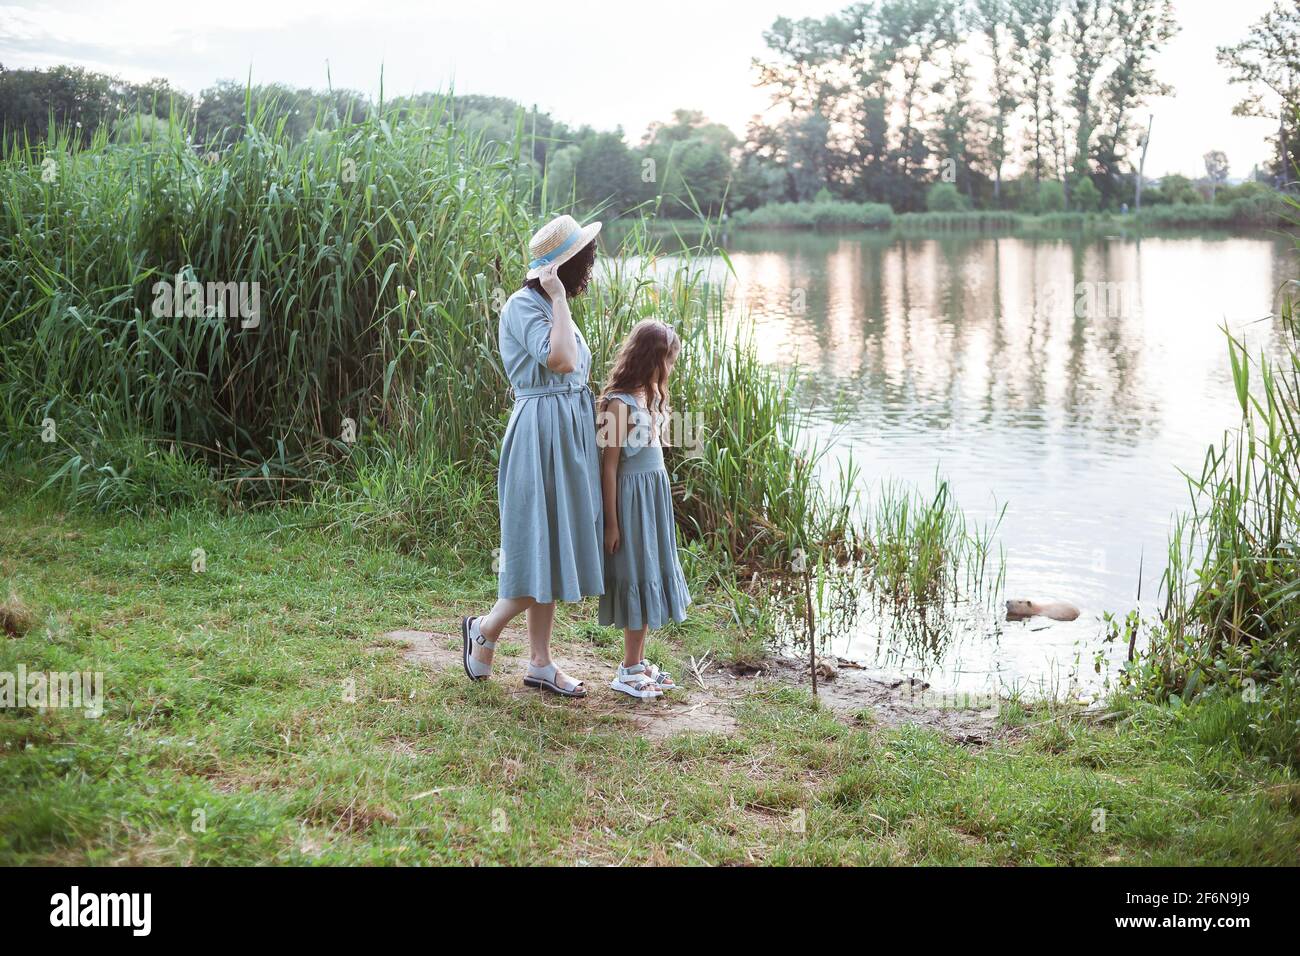 Una ragazza si trova sulla riva del lago e. guarda la nutria nell'acqua Foto Stock